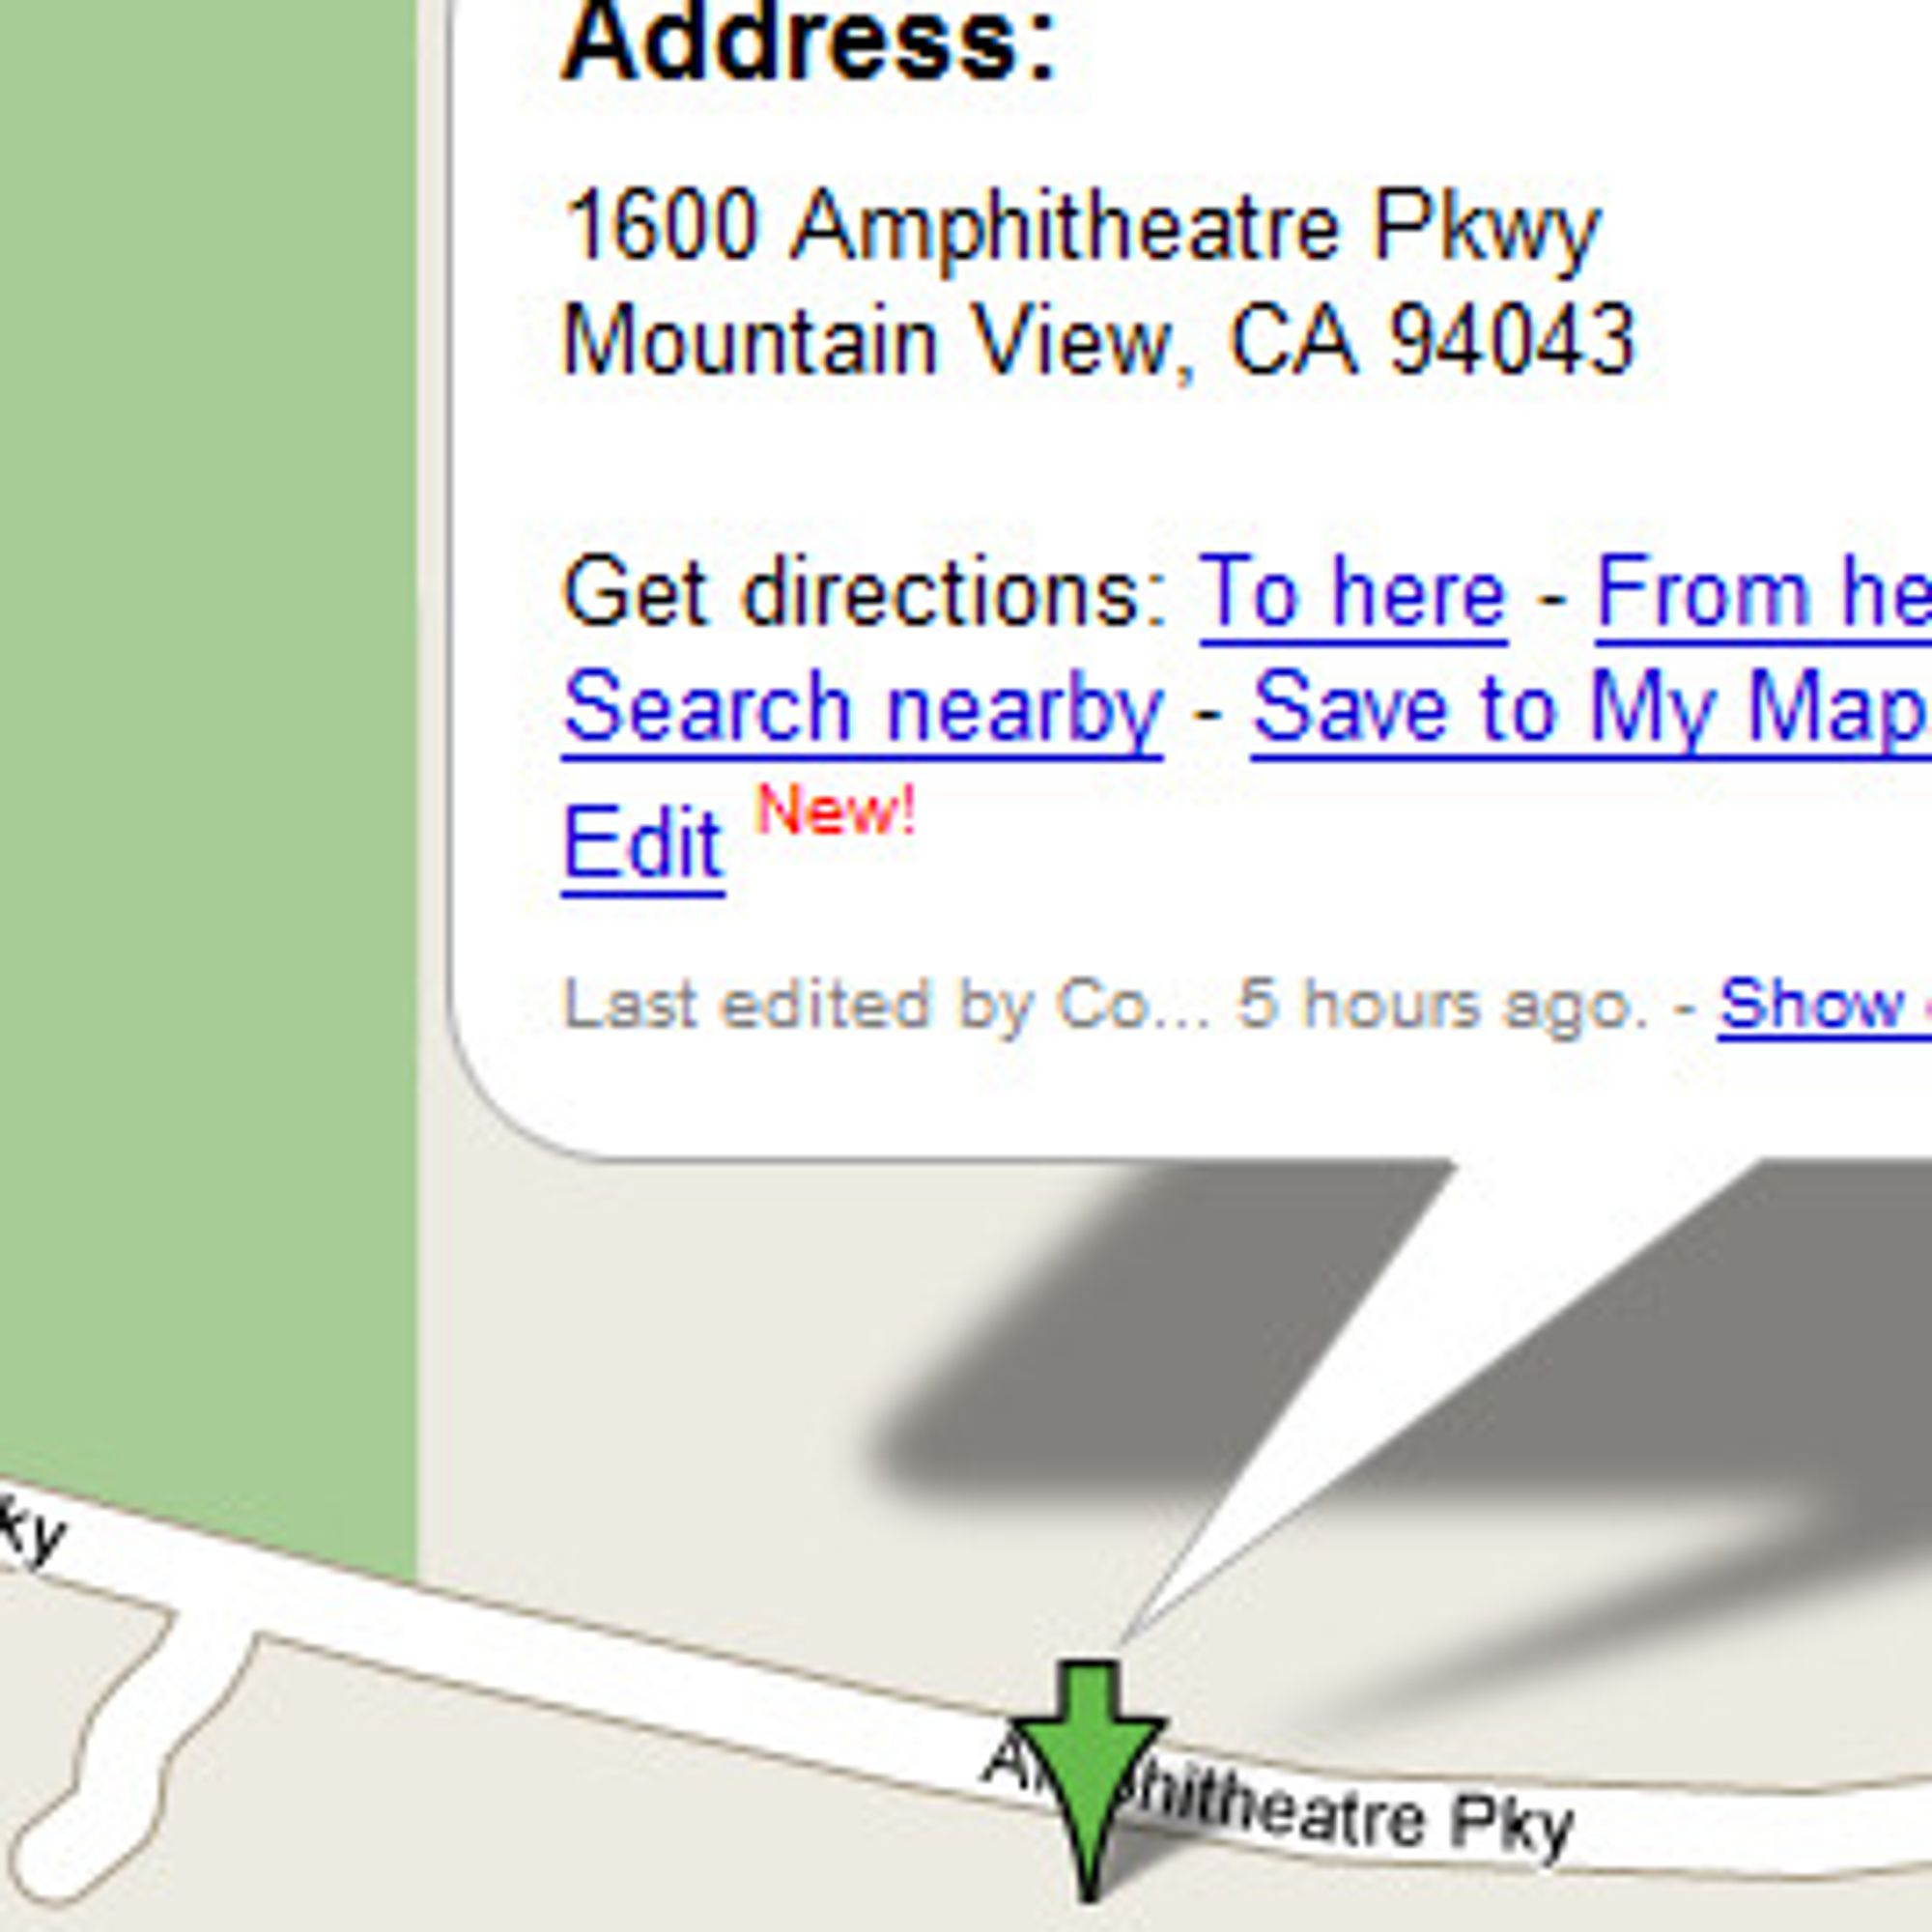 Lar brukerne rette feil i Google Maps - Digi.no